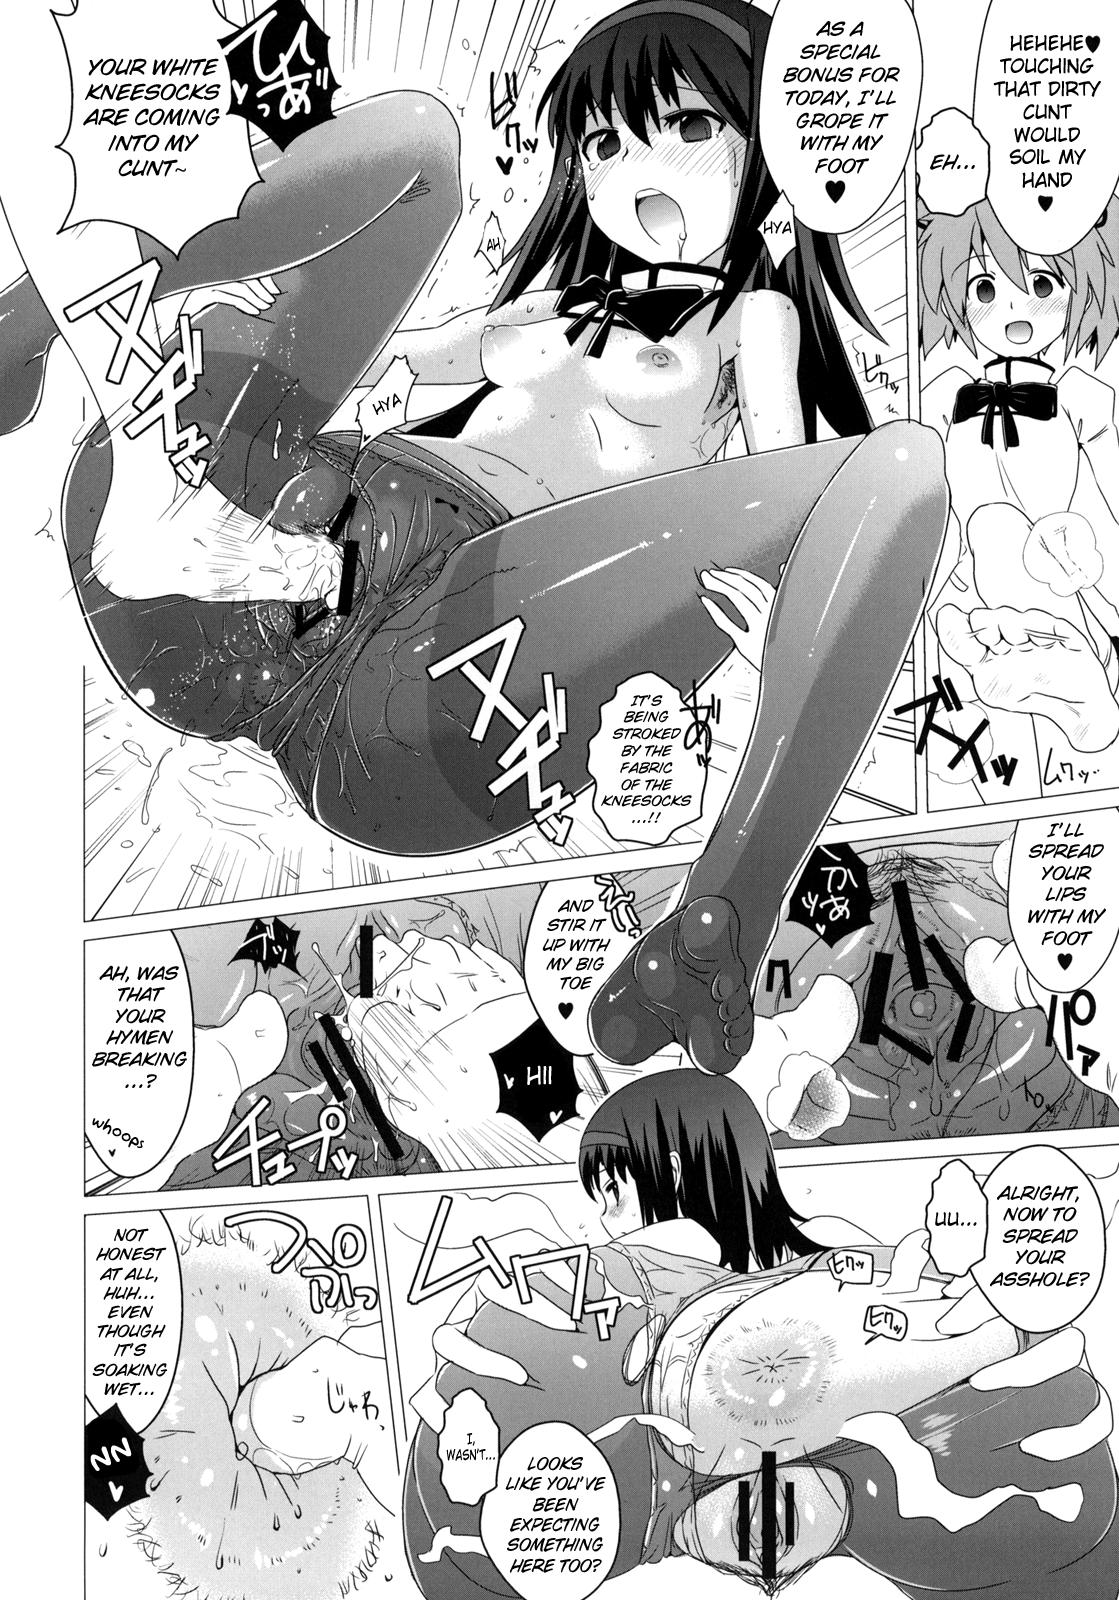 Candid Hentai Musume + Omake Paper - Puella magi madoka magica Chaturbate - Page 11